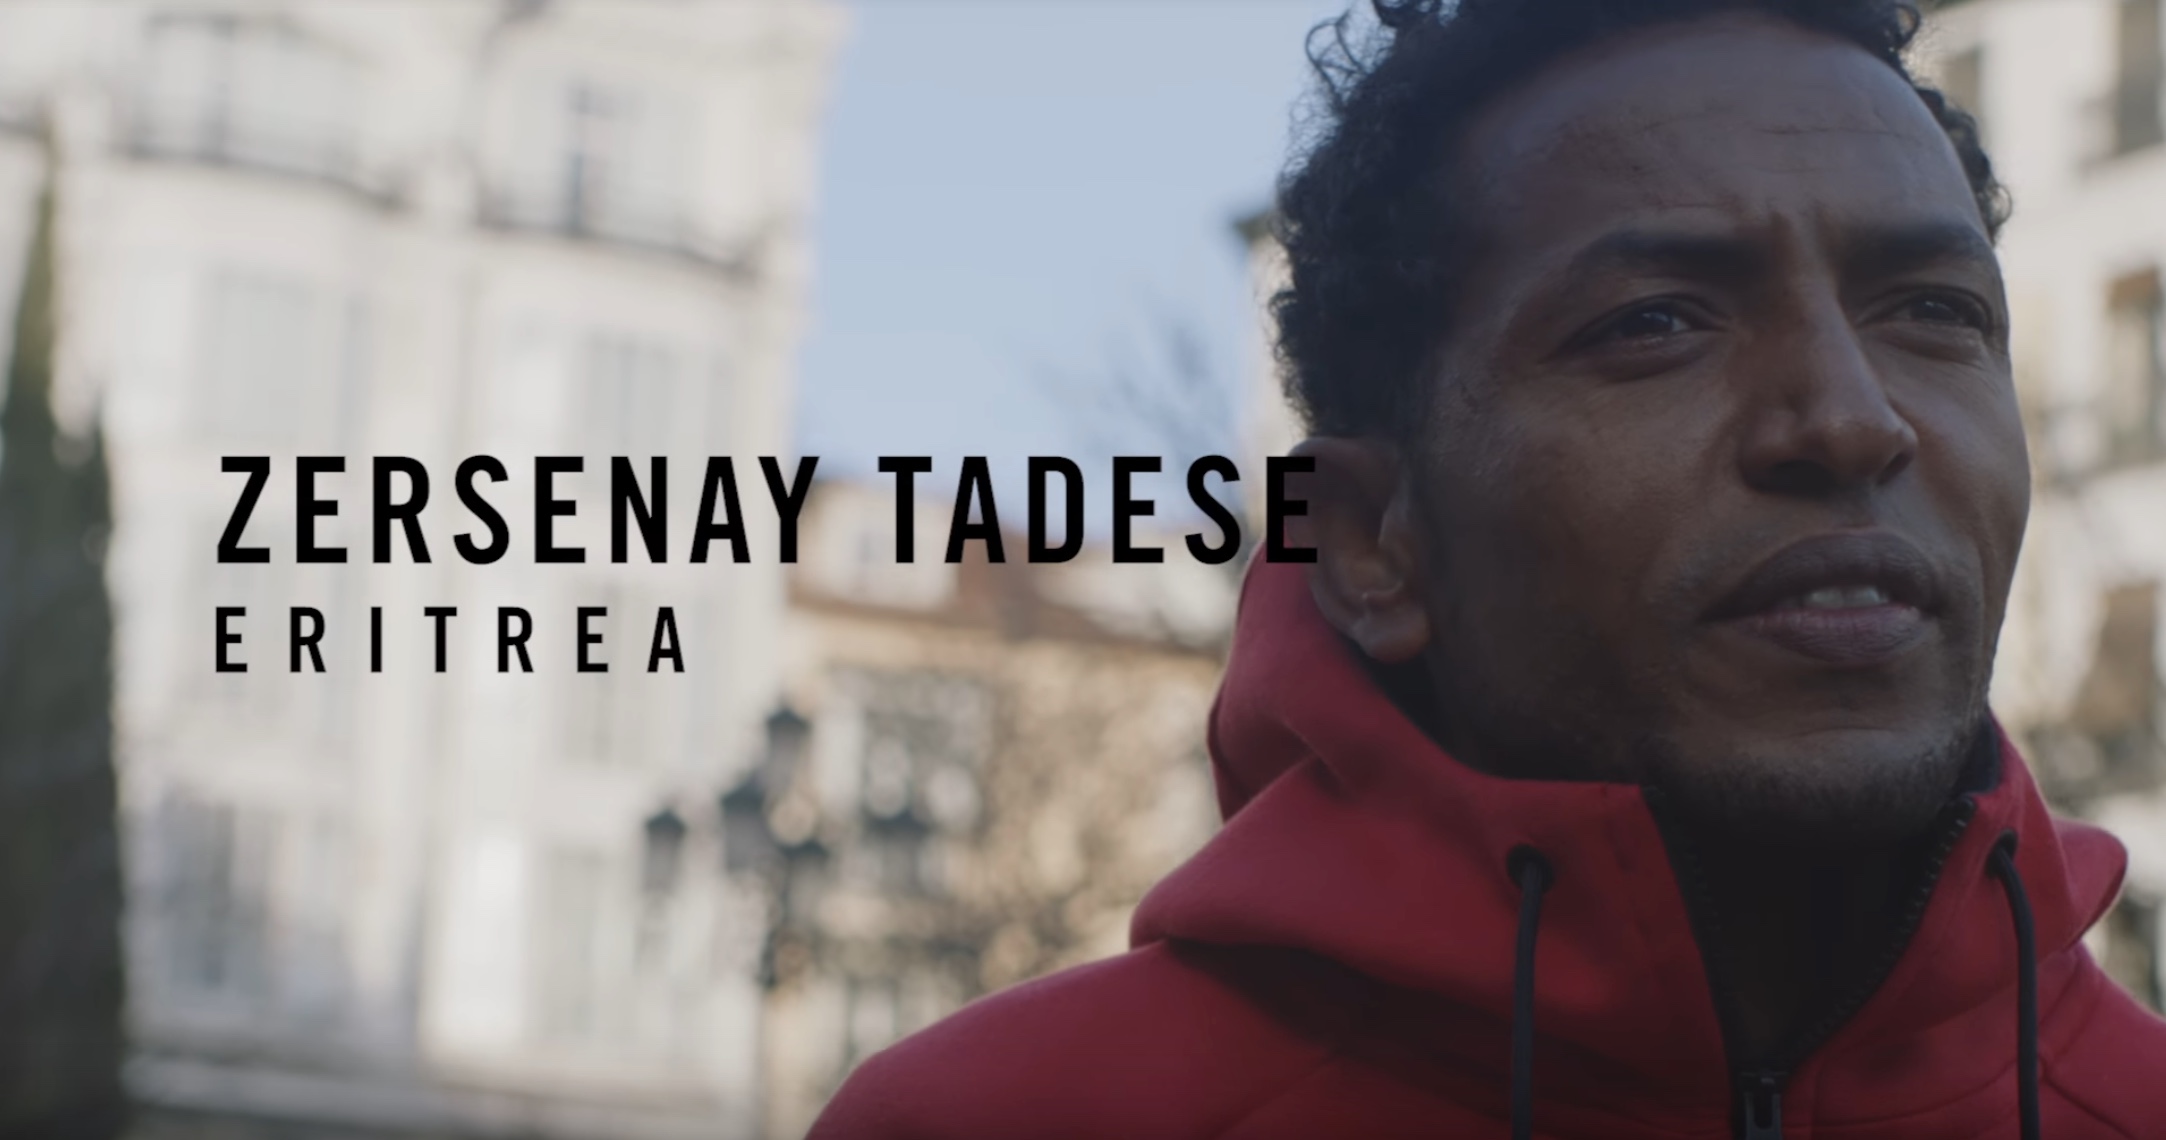 Nike - Zersenay Tadese